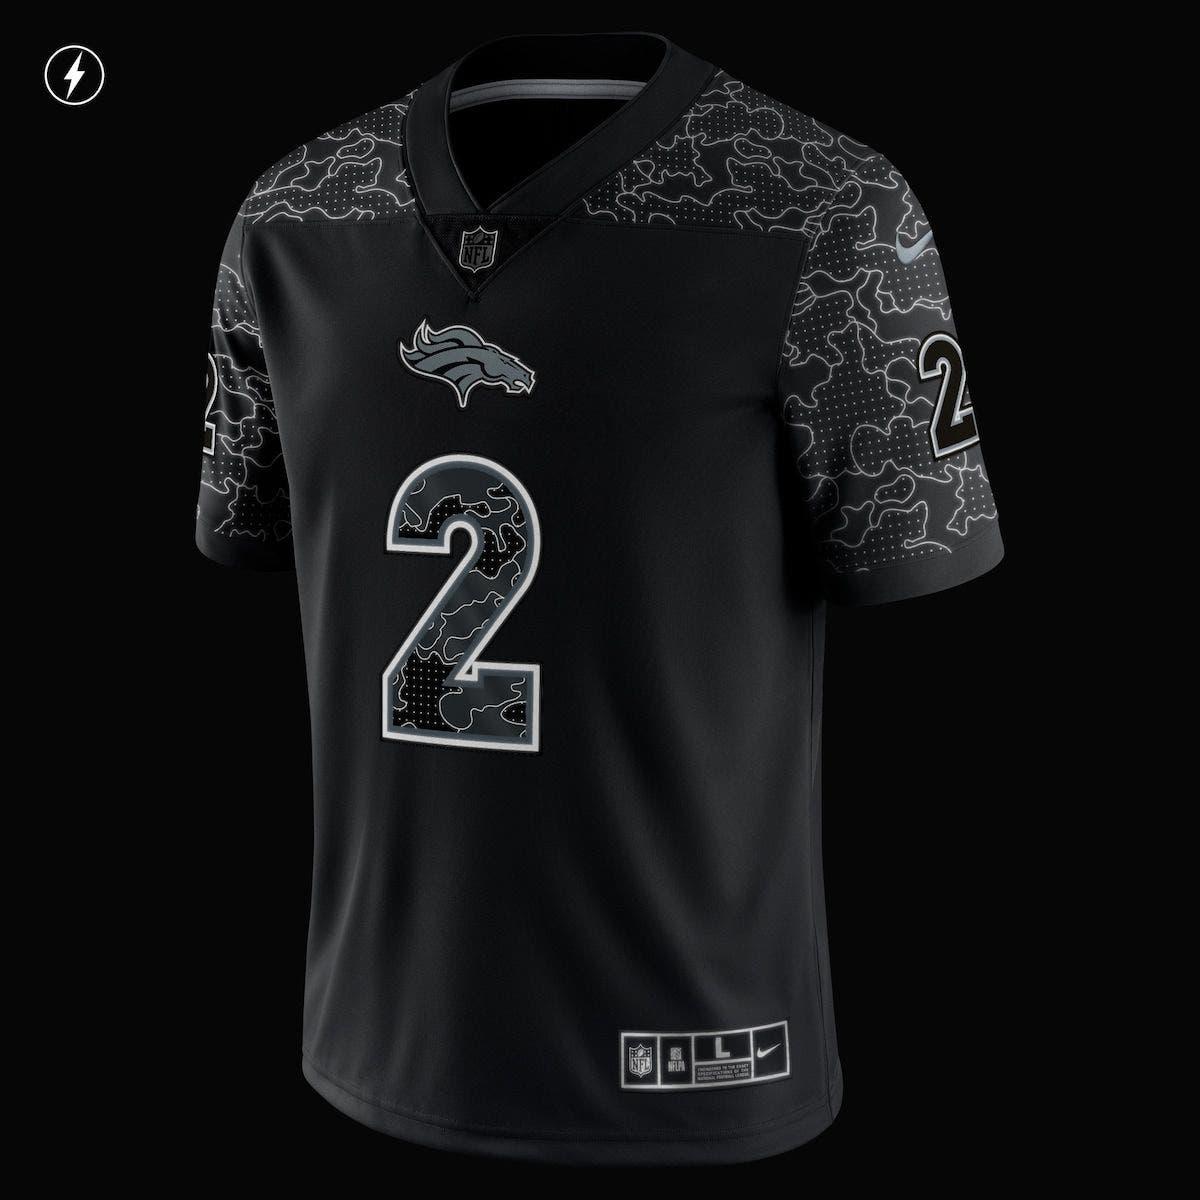 Nike Men's 12th Fan Seattle Seahawks Limited Color Rush Jersey - Macy's